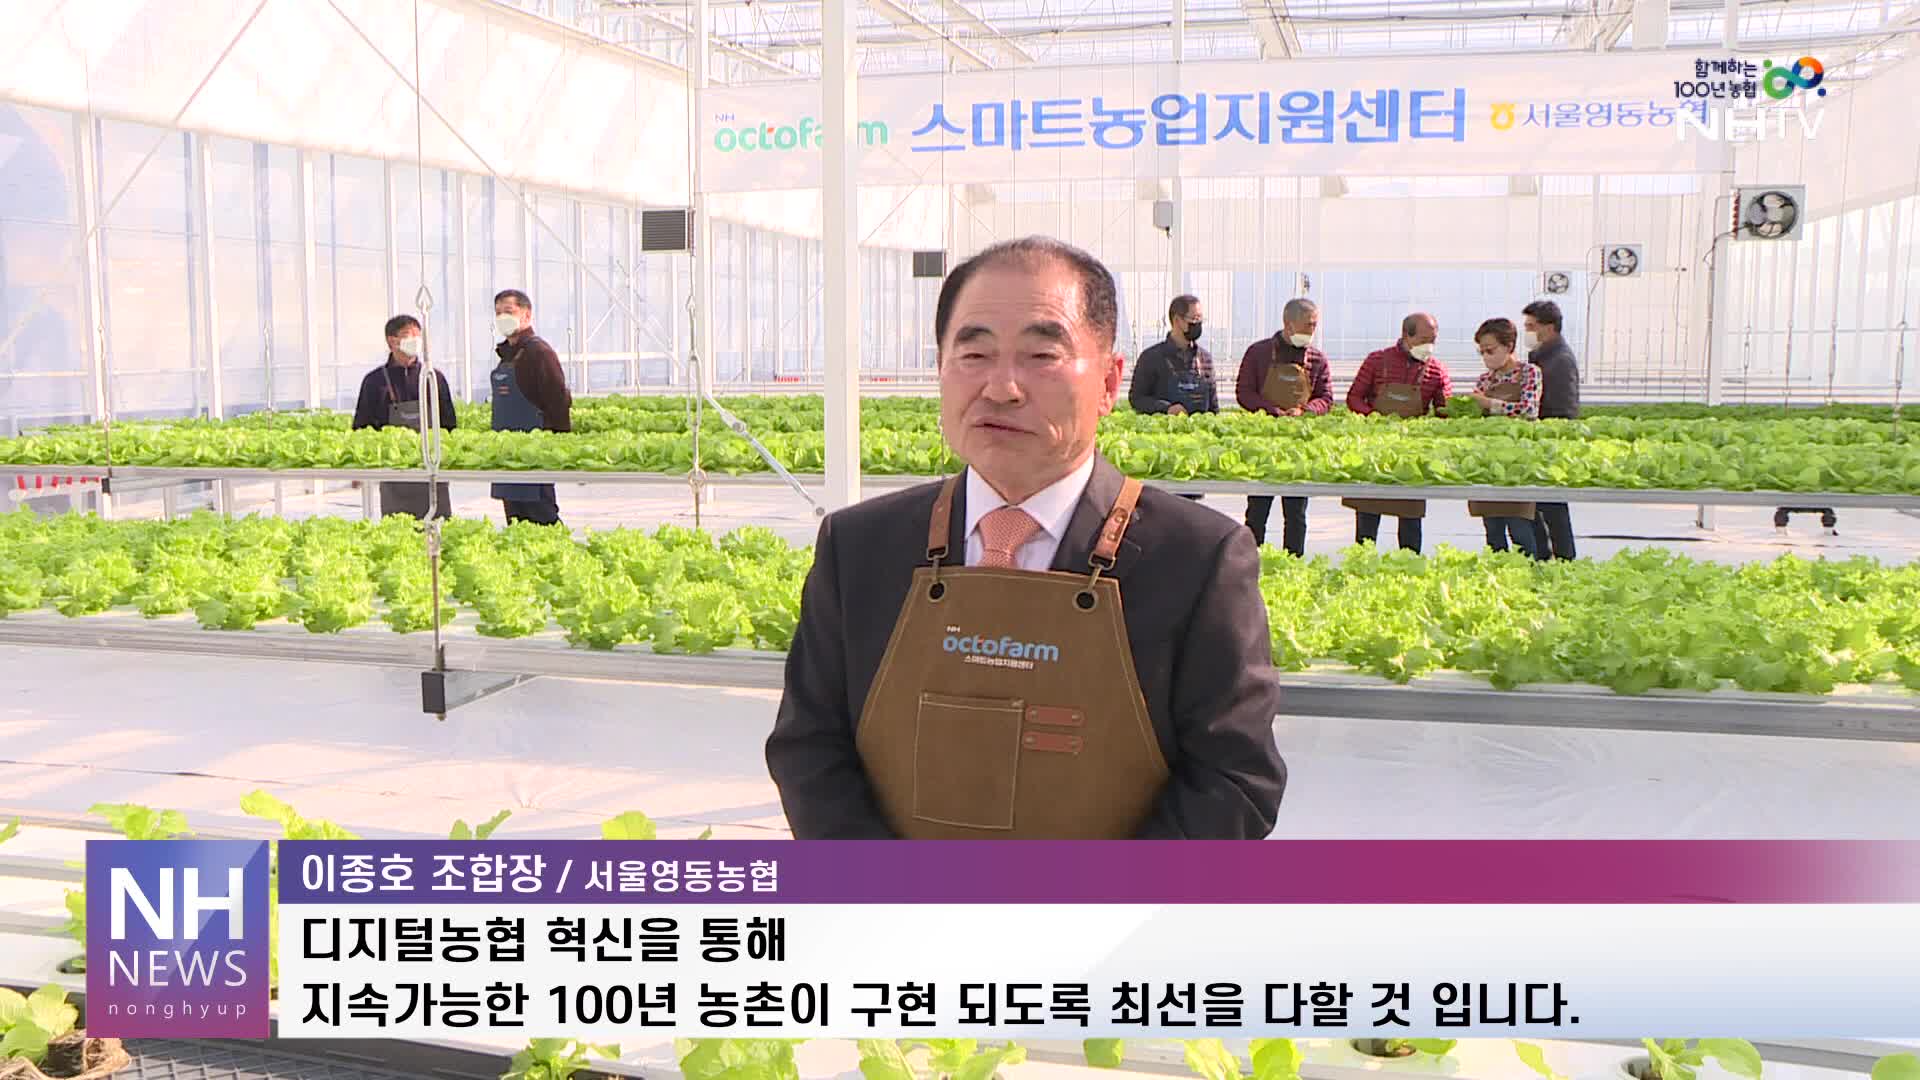 서울 영동농협, 도시형 스마트팜 오픈 